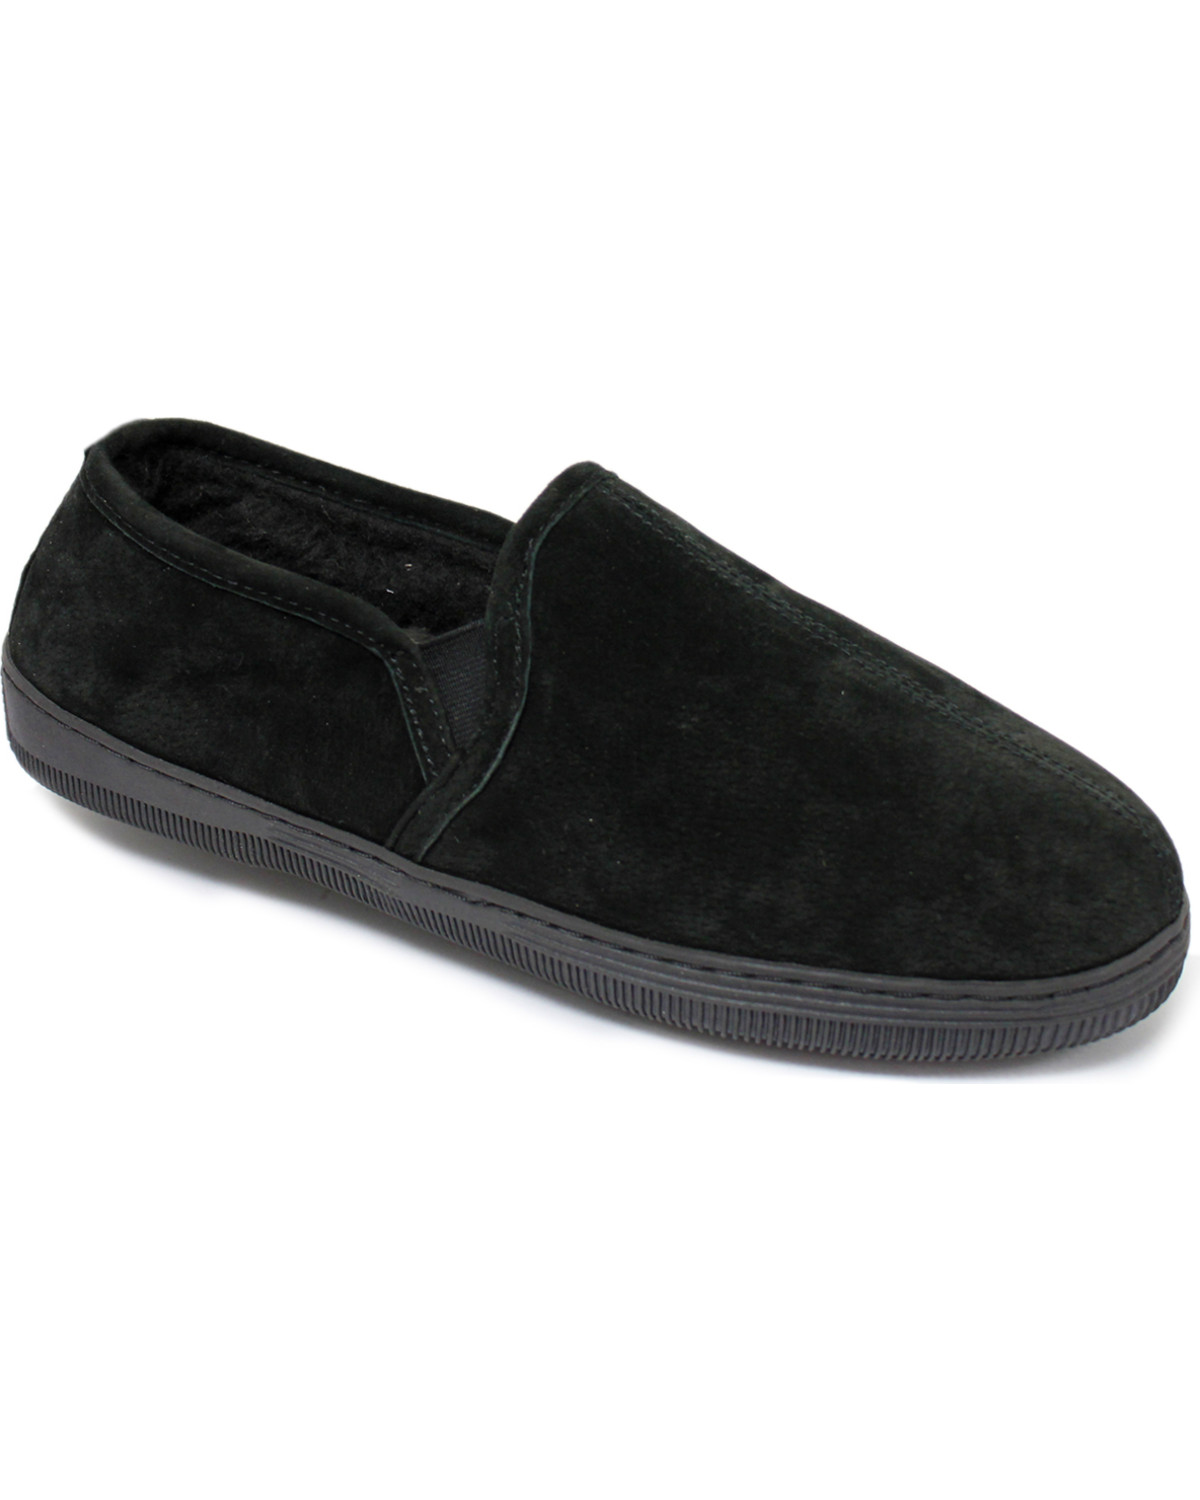 Lamo Footwear Men's Classic Romeo Slippers